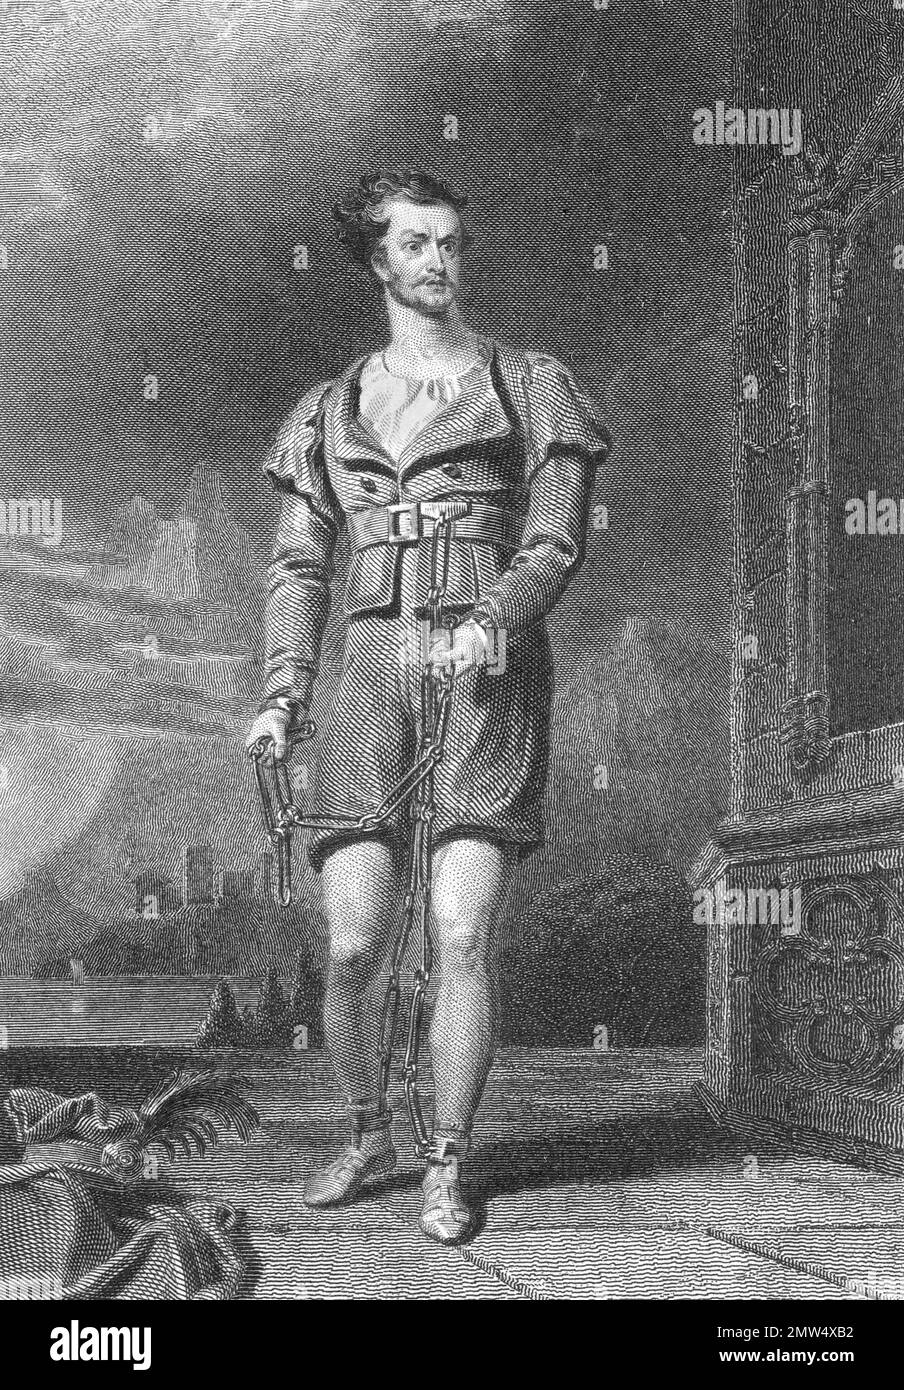 William Tell. Incisione di William C. Macready come William Tell basata su una foto di Asher B Durand, 1830. William Tell era un eroe popolare in Svizzera nel 14th ° secolo. Foto Stock